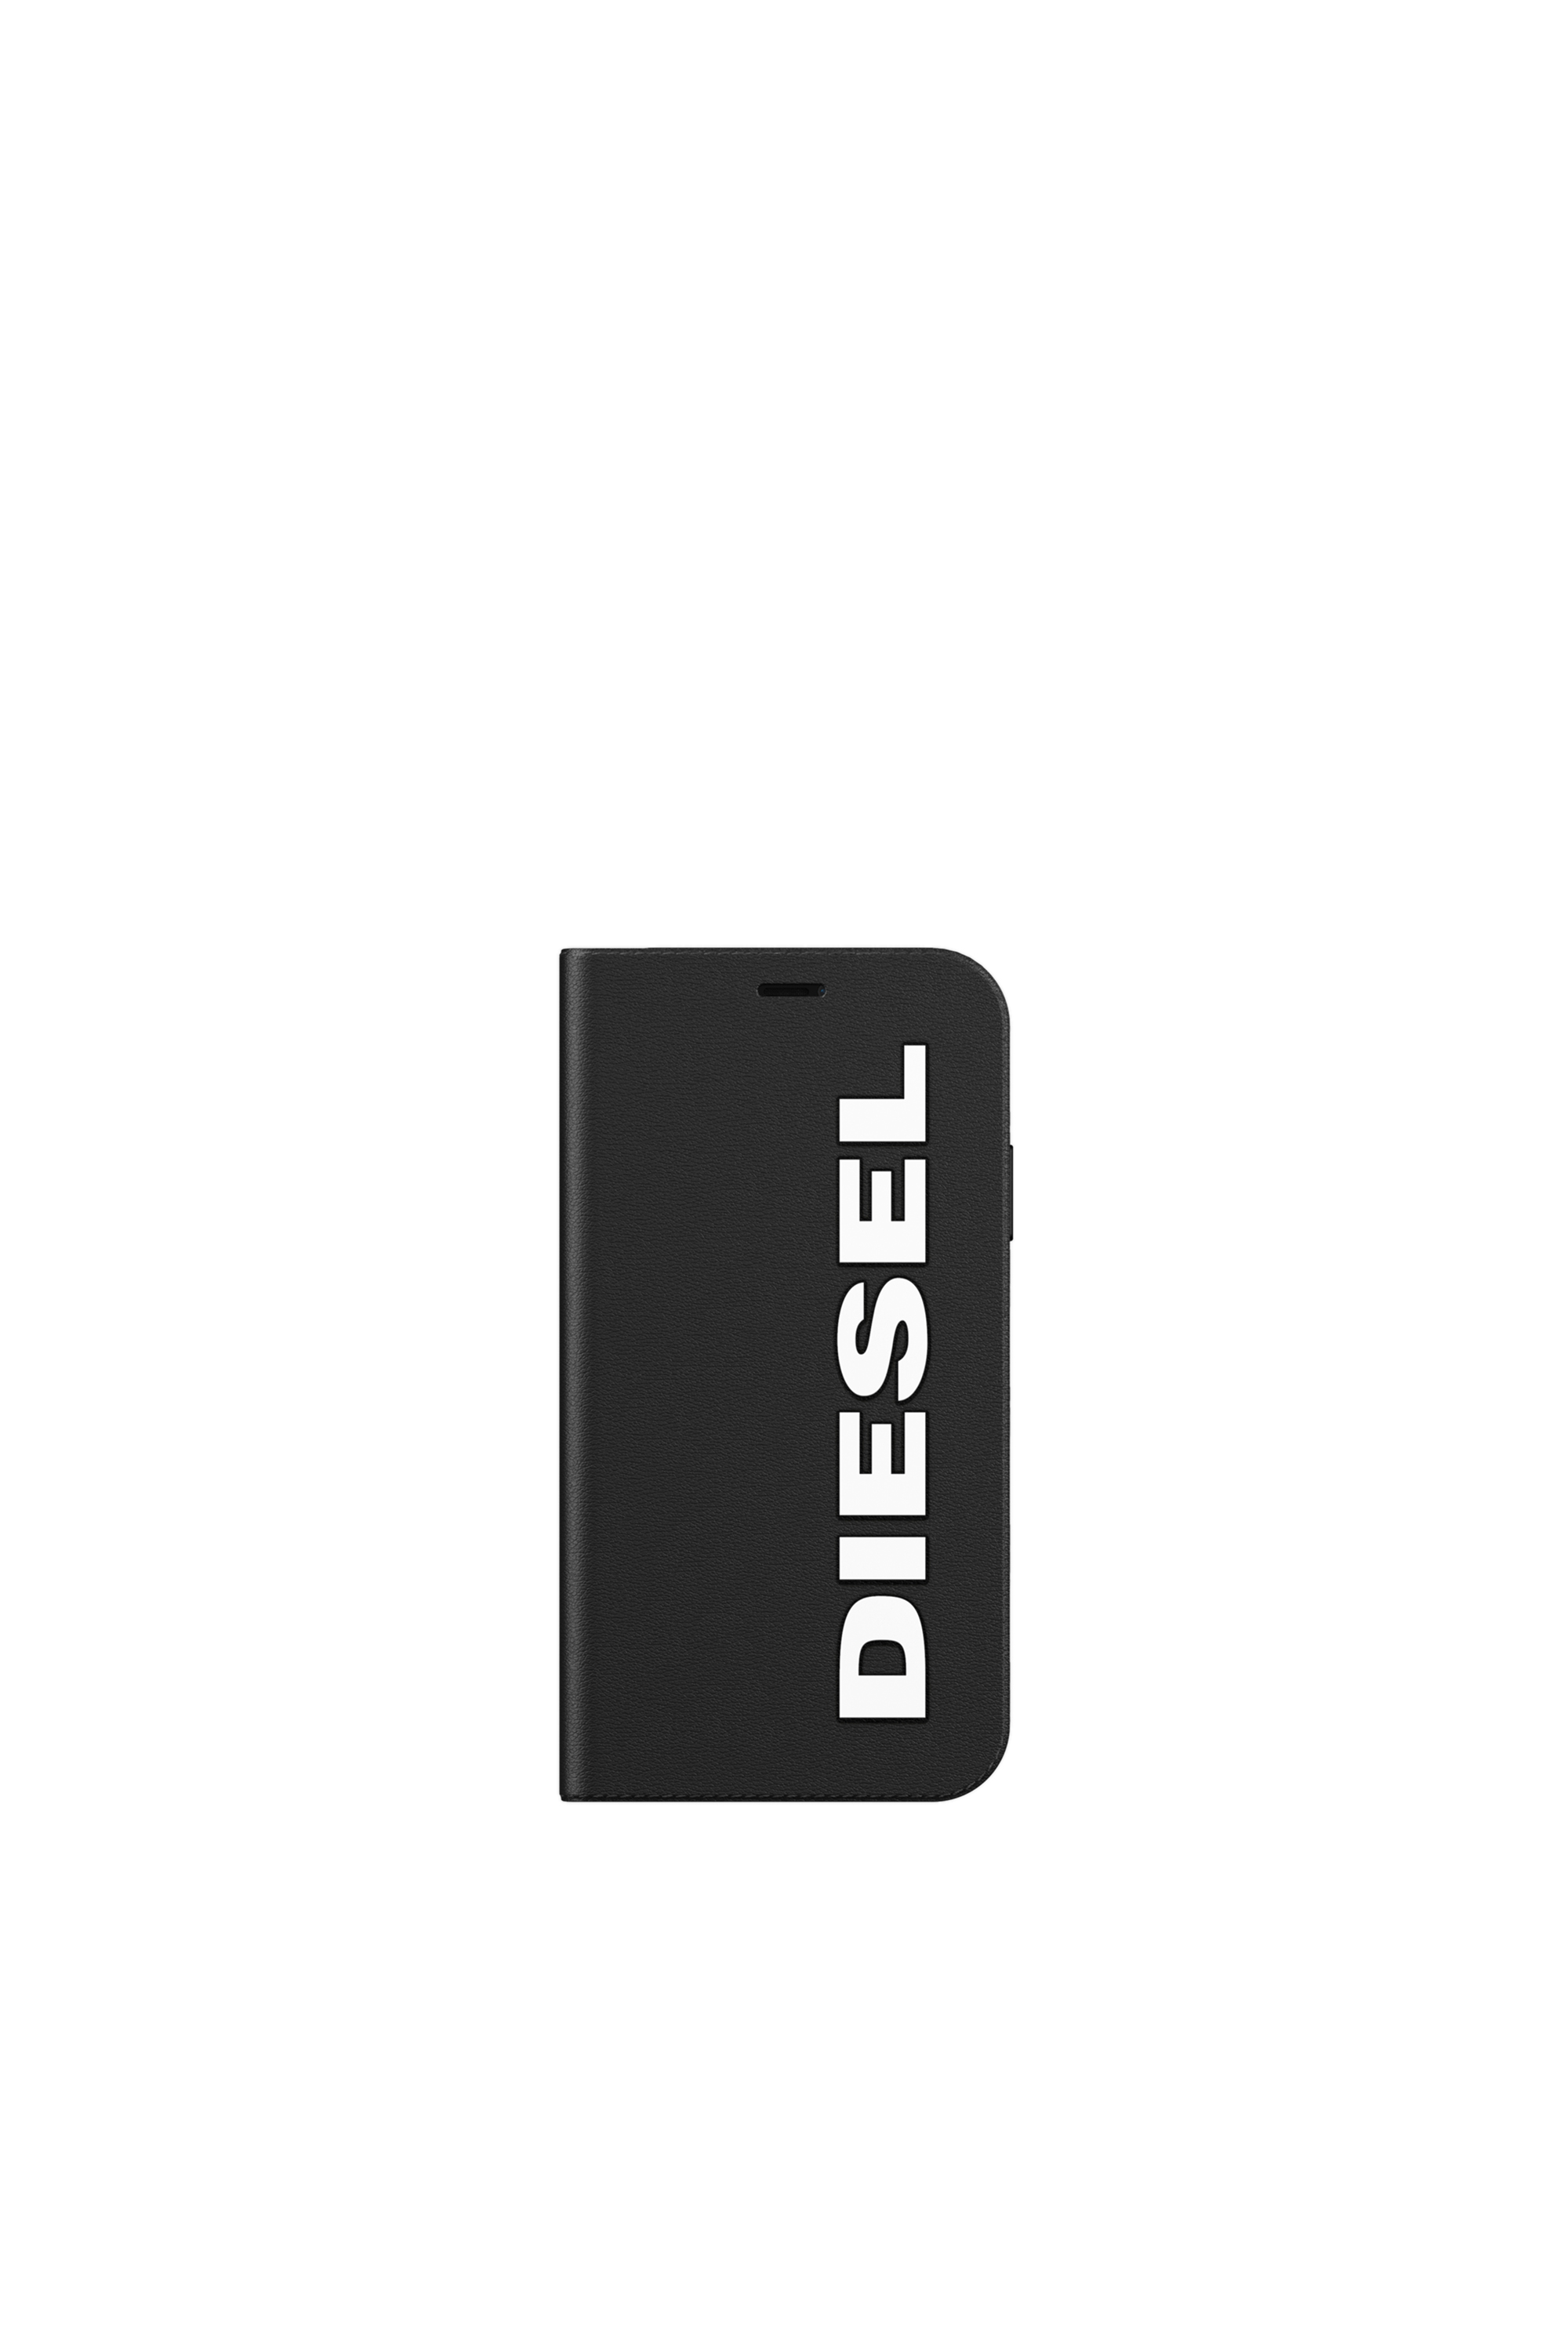 Diesel - 41973, Black - Image 2